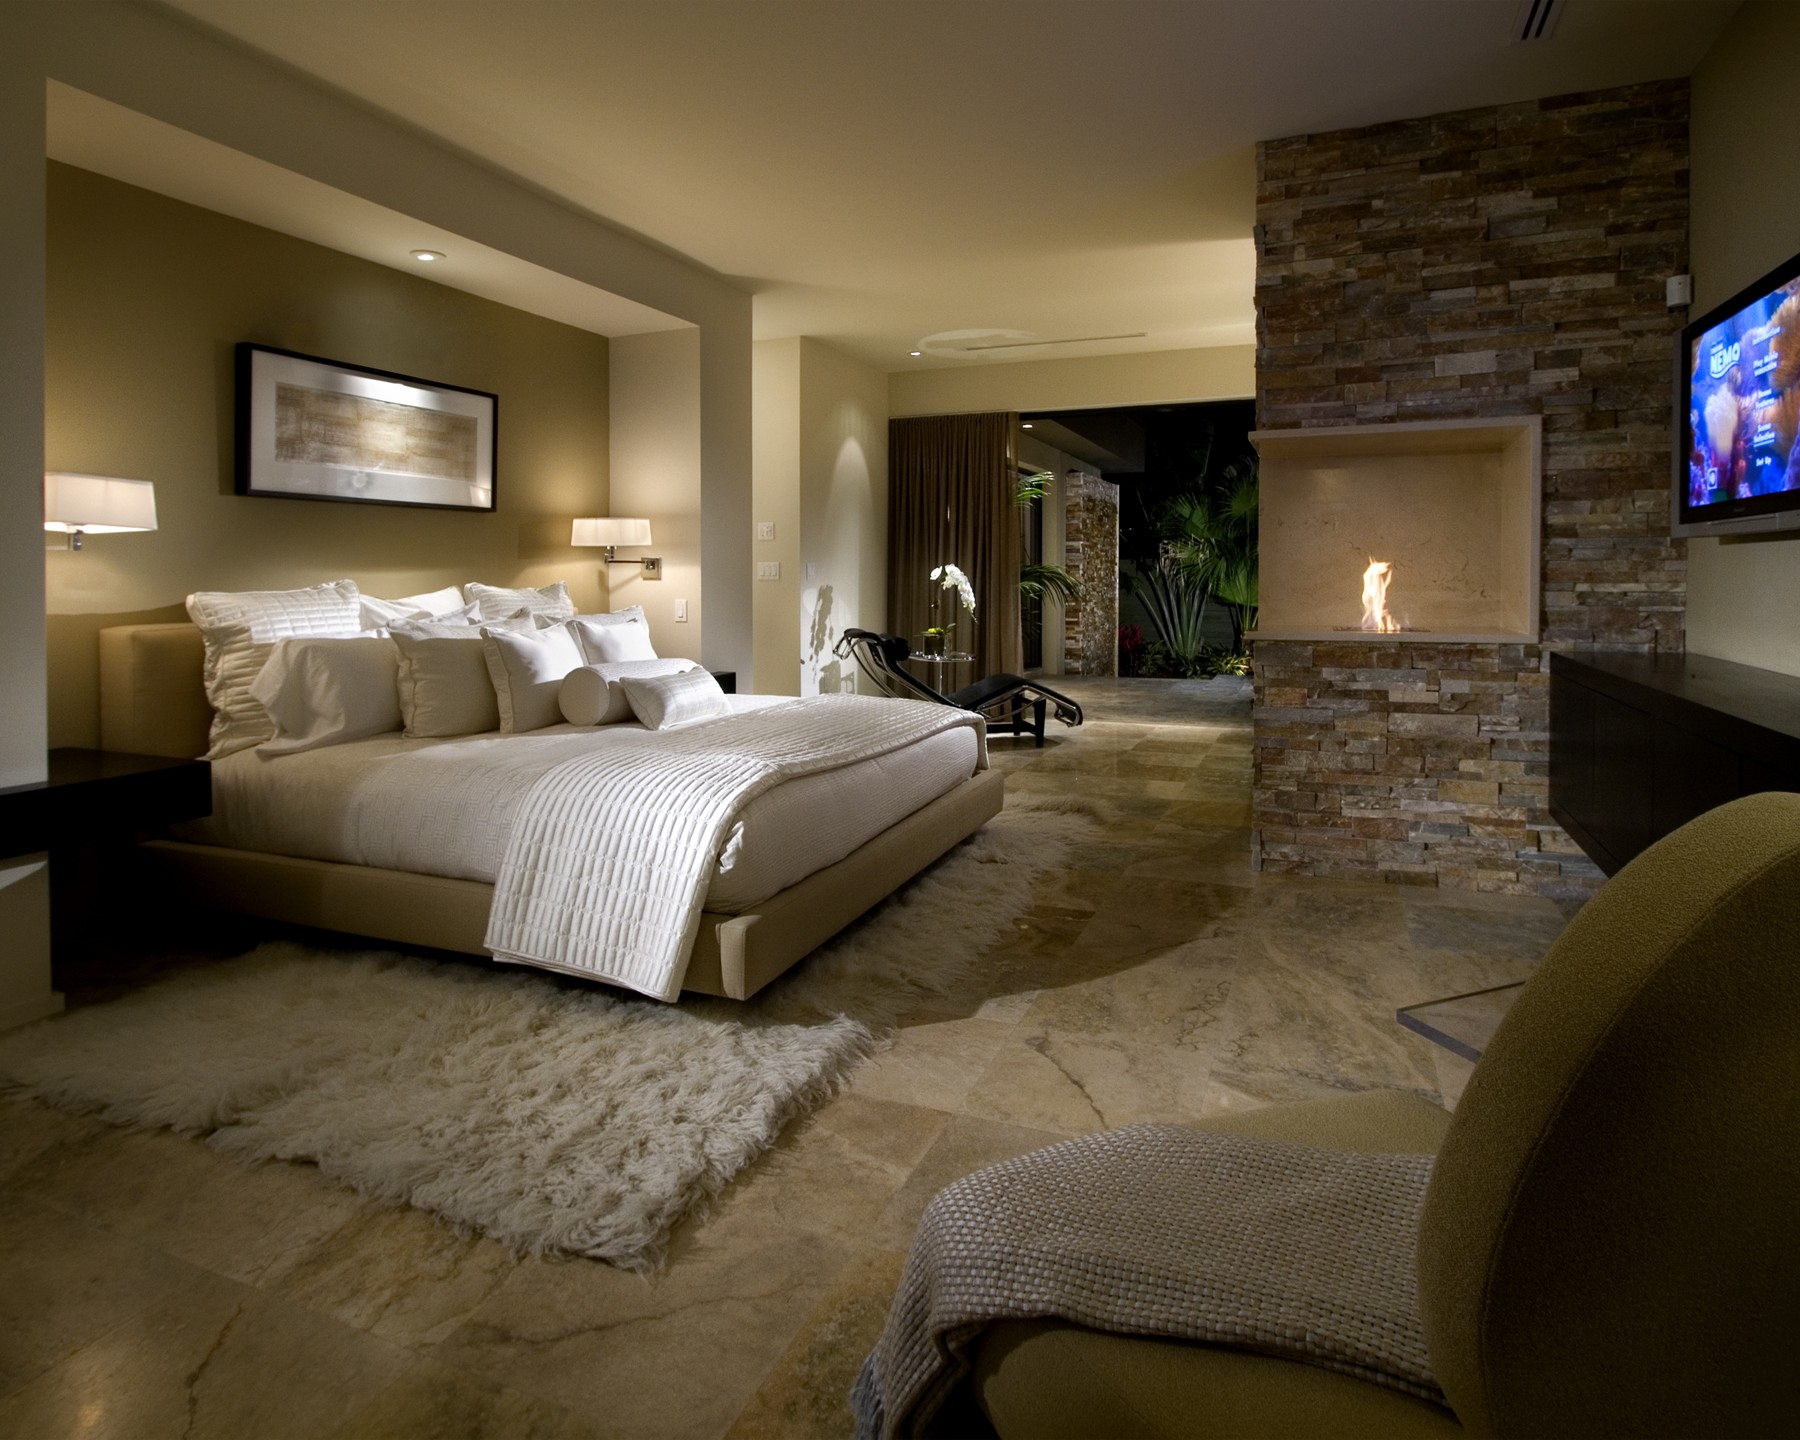 Bedroom Fireplace Decor Ideas - Simple